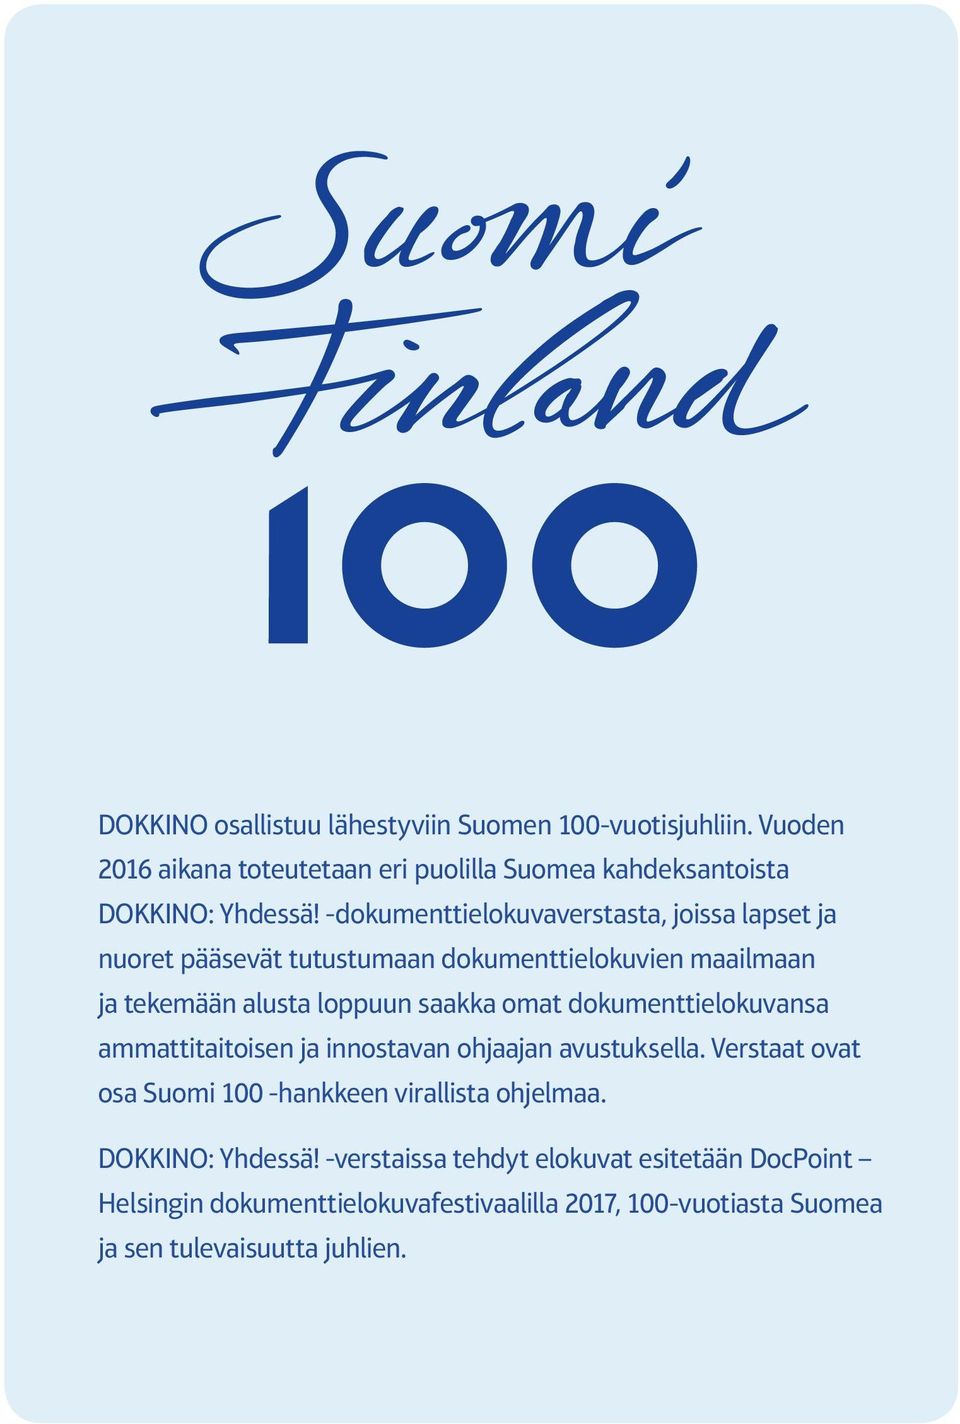 dokumenttielokuvansa ammattitaitoisen ja innostavan ohjaajan avustuksella. Verstaat ovat osa Suomi 100 -hankkeen virallista ohjelmaa.